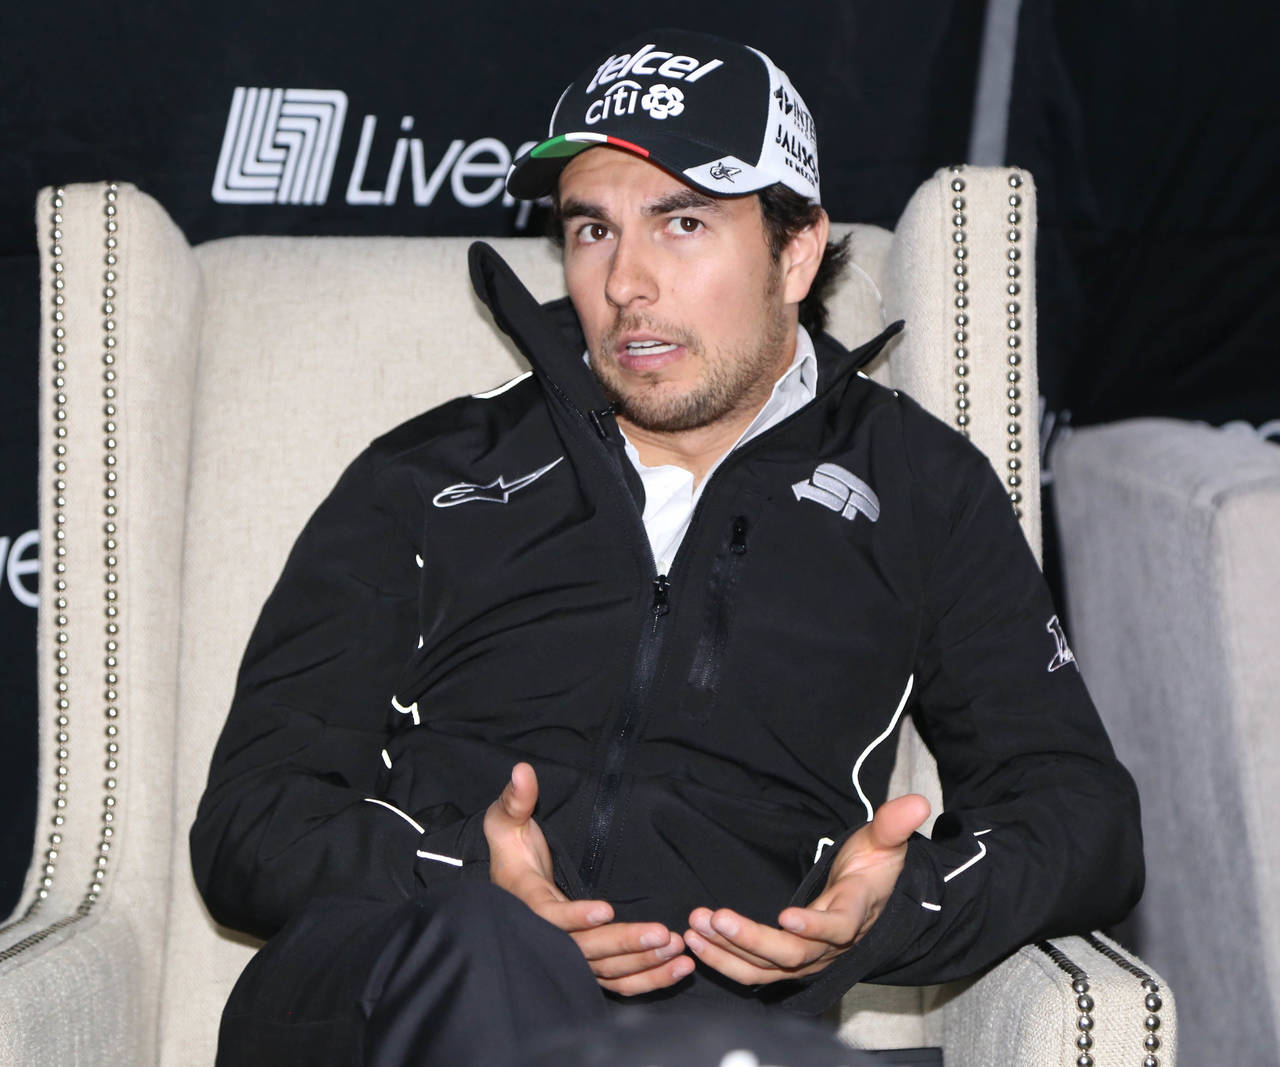 Sergio Pérez finalizó en la séptima posición la temporada pasada, ahora aspira a estar entre los mejores cinco pilotos de la Fórmula Uno. Sergio Pérez aspira a estar entre los mejores cinco